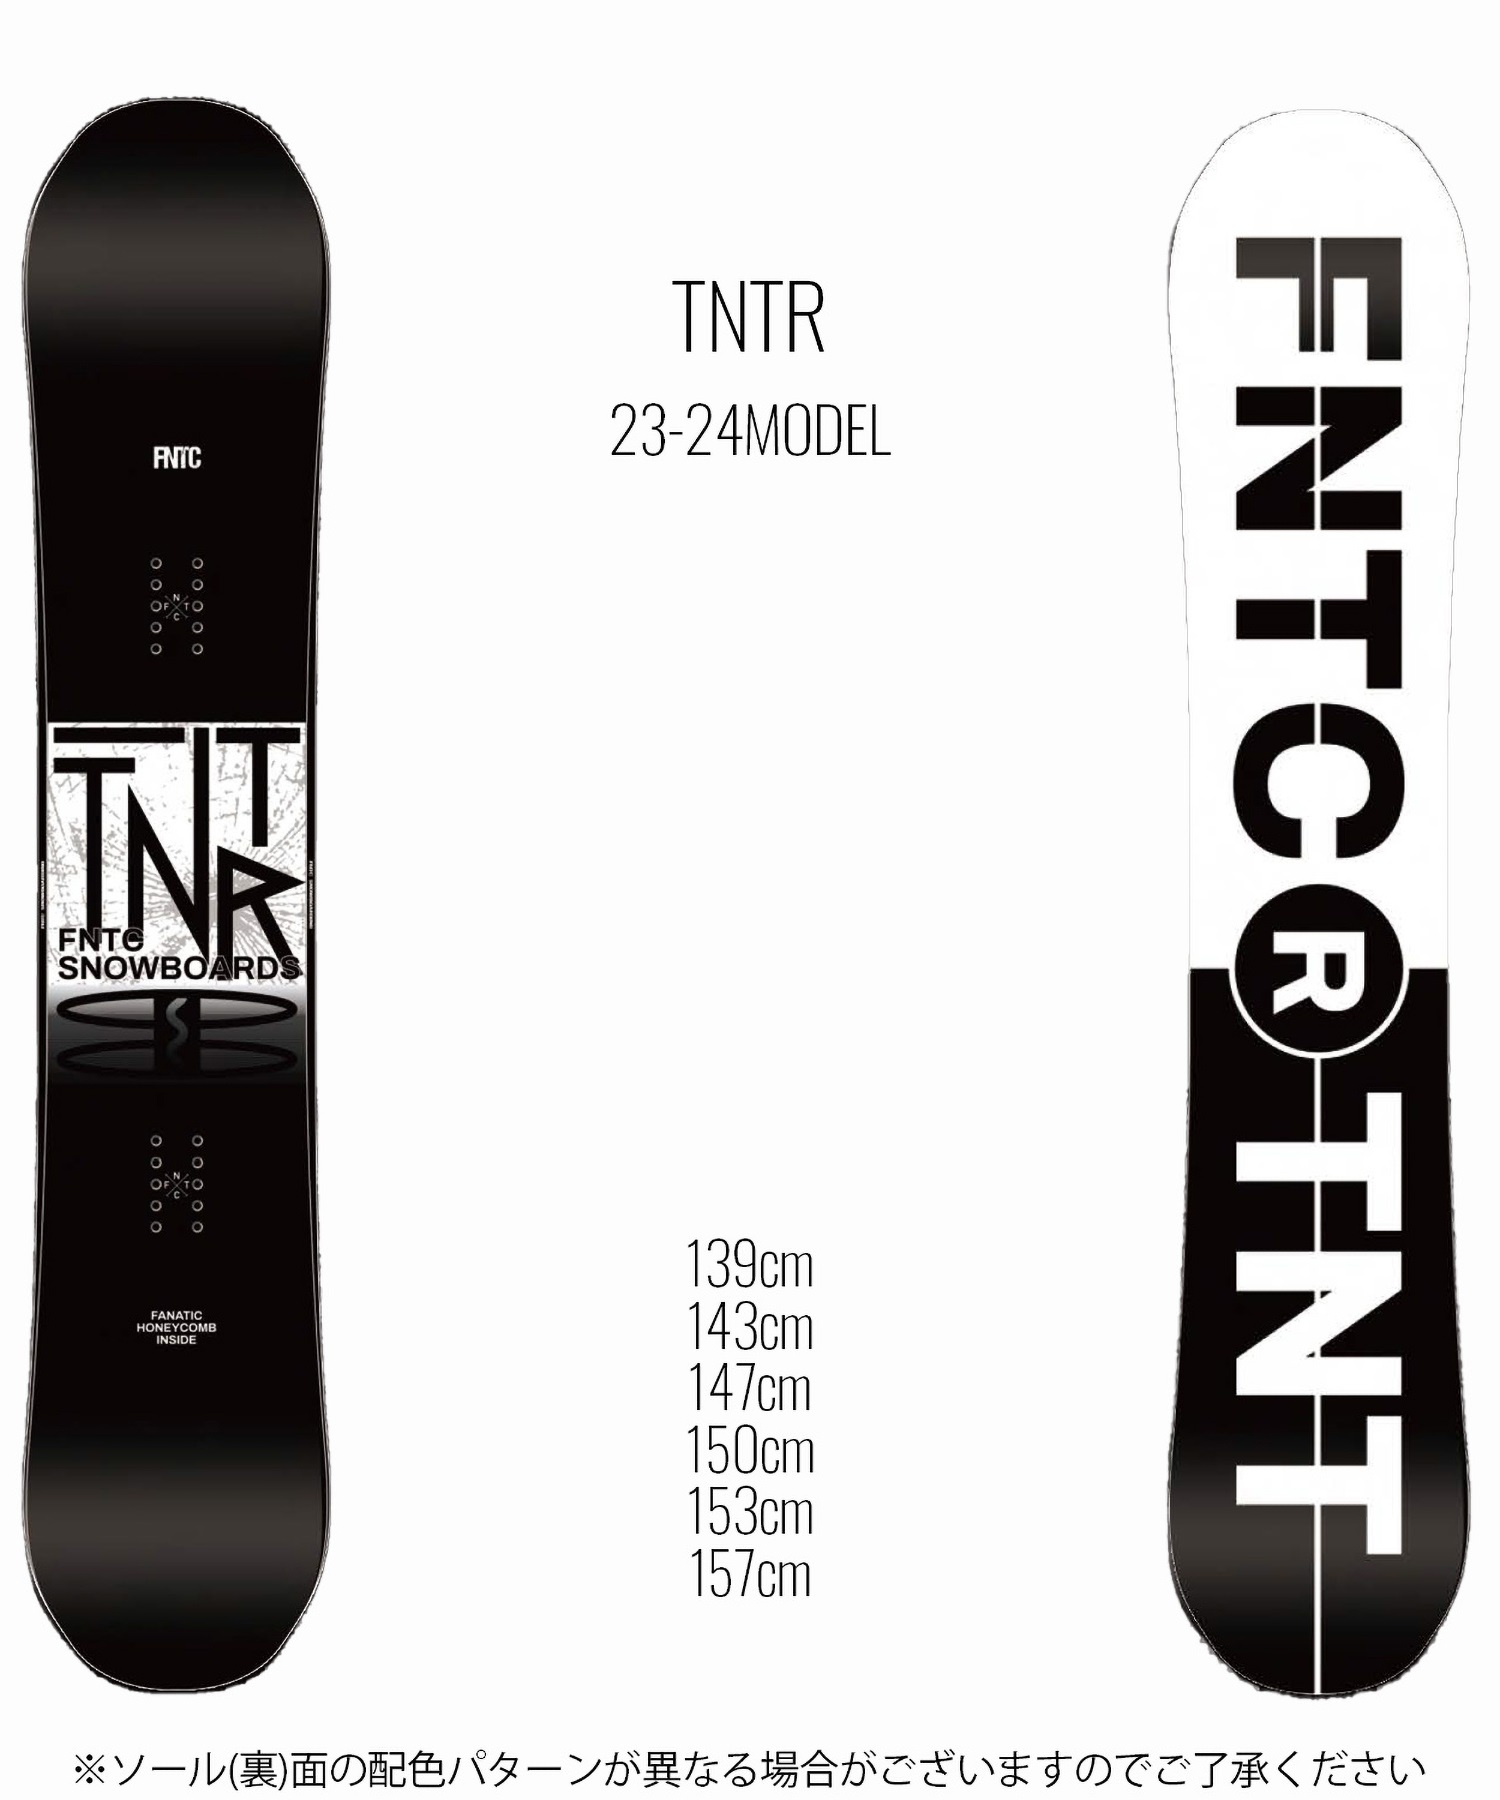 スノーボード 板 ユニセックス FNTC エフエヌティーシー TNTRBW 23-24モデル KK C25(BLACKWHITE-139cm)